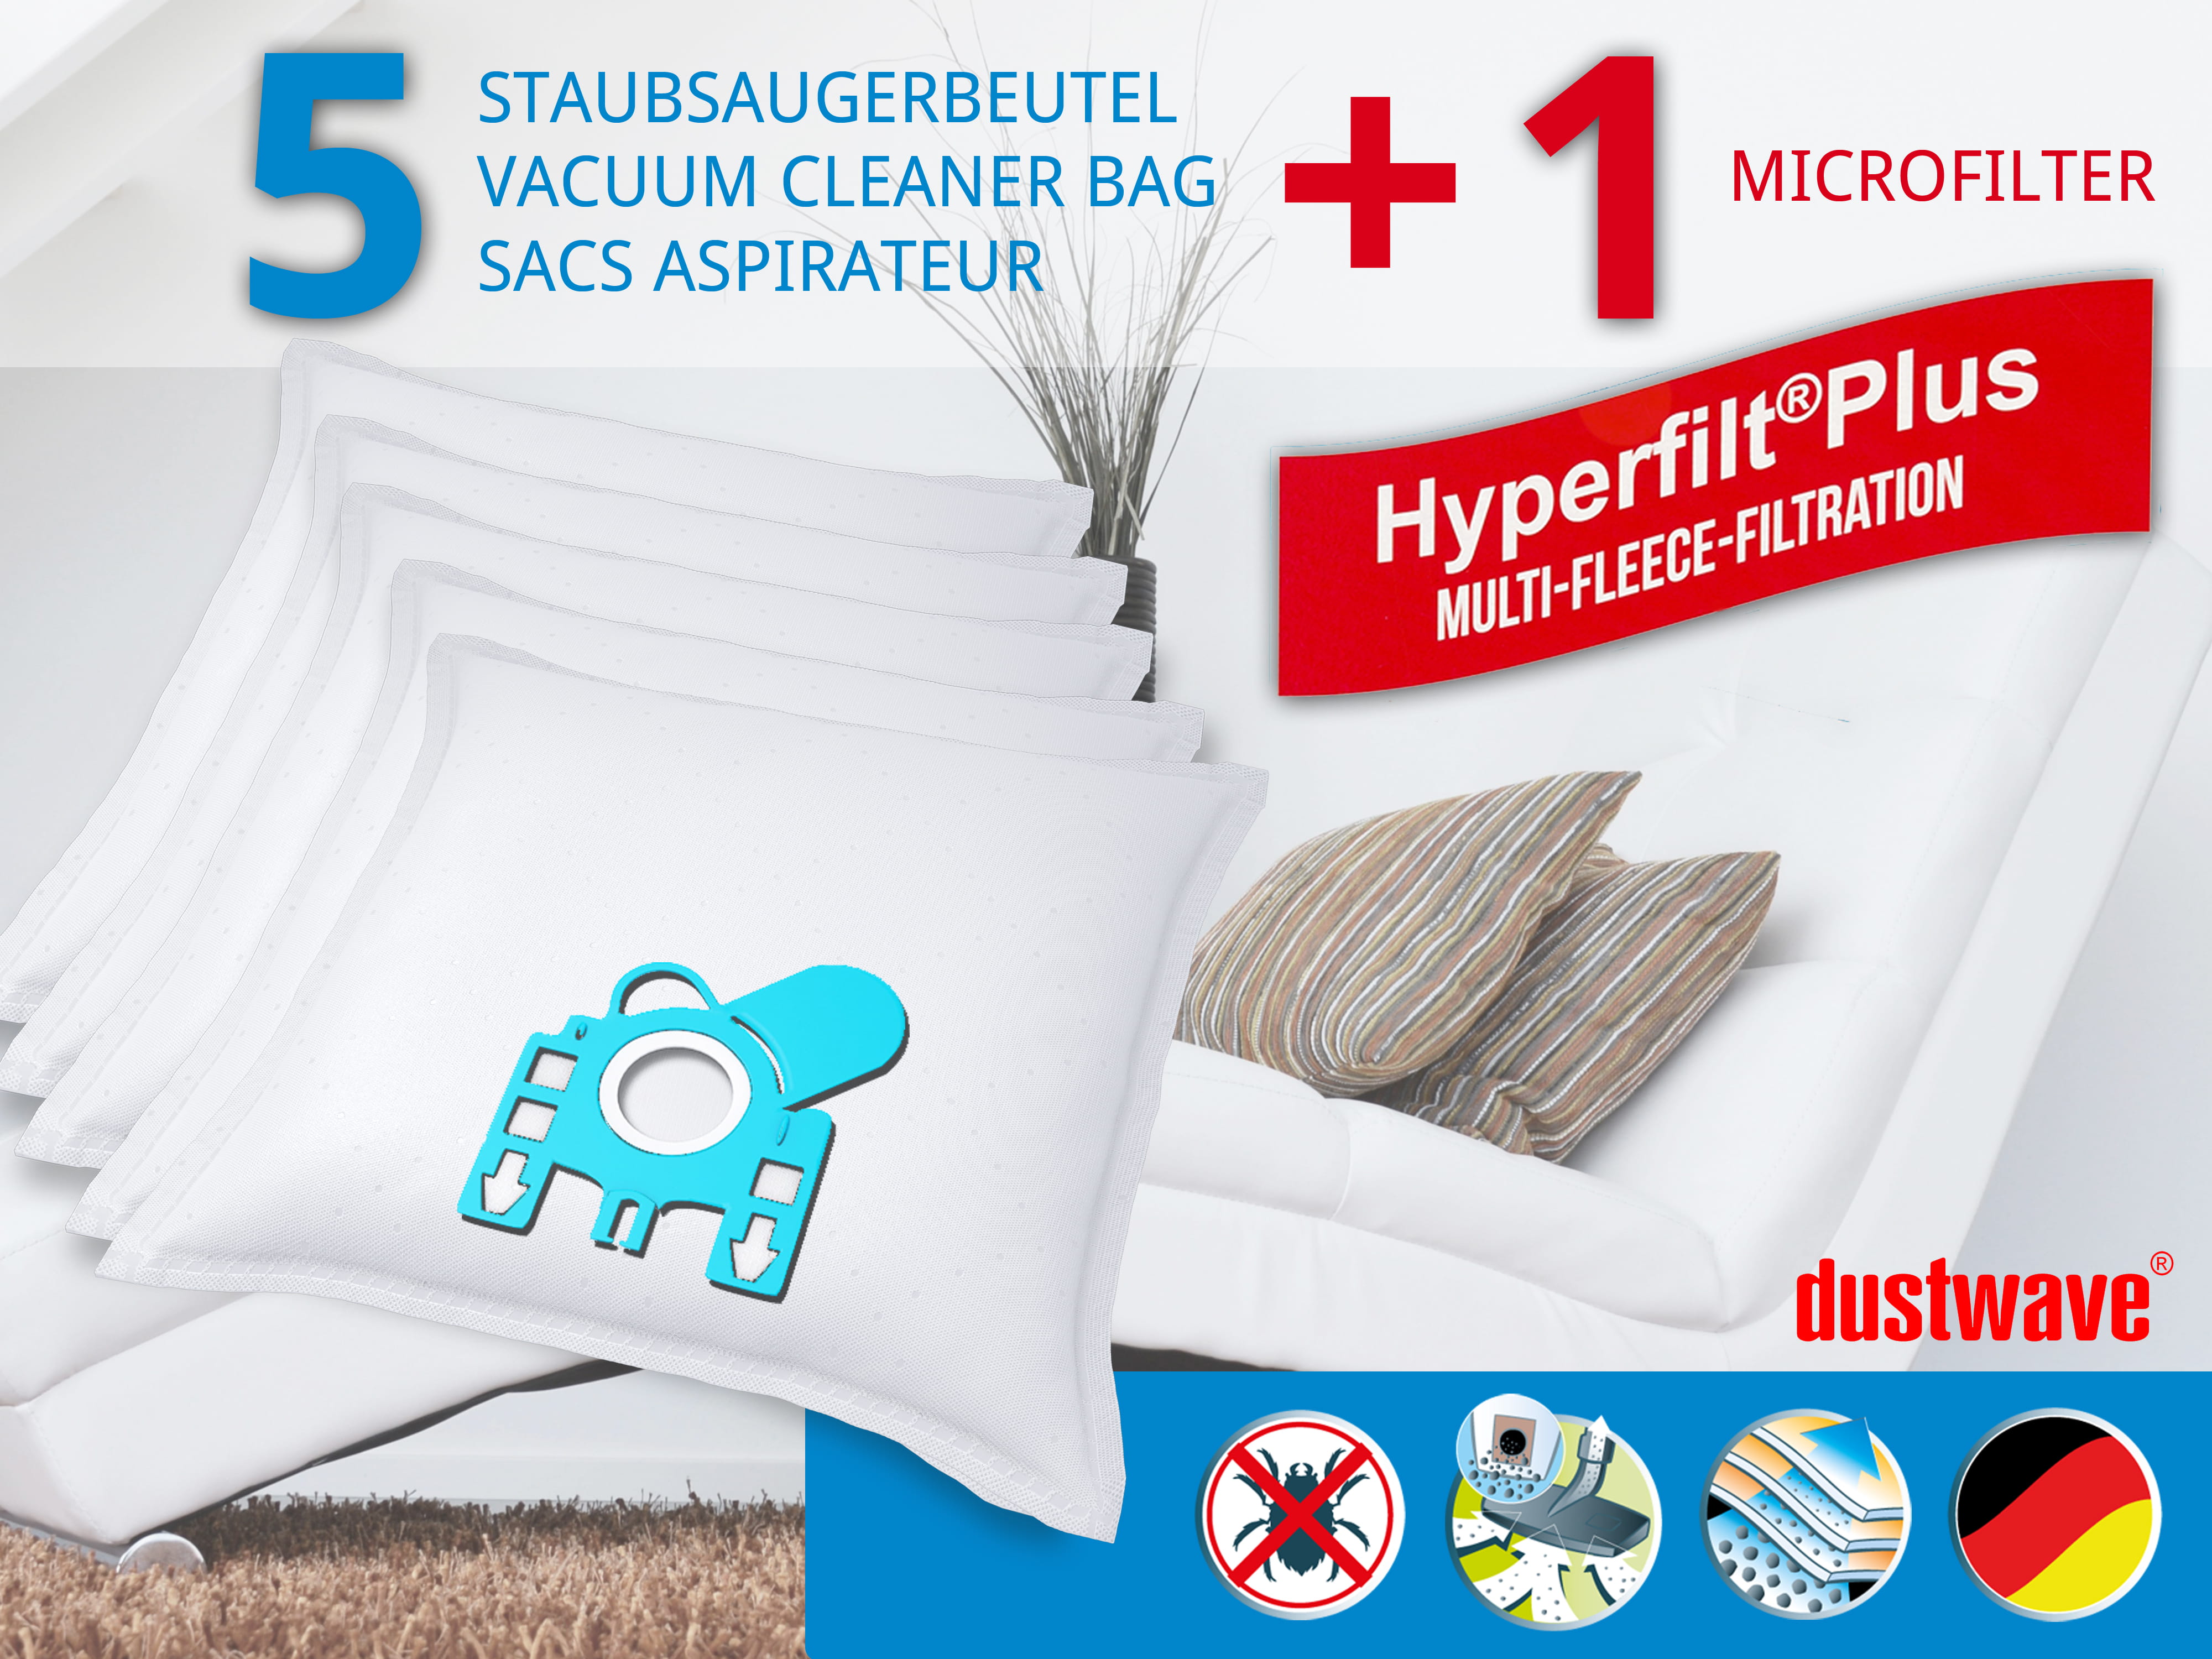 Dustwave® 5 Staubsaugerbeutel für Miele S5 Premio - hocheffizient, mehrlagiges Mikrovlies mit Hygieneverschluss - Made in Germany